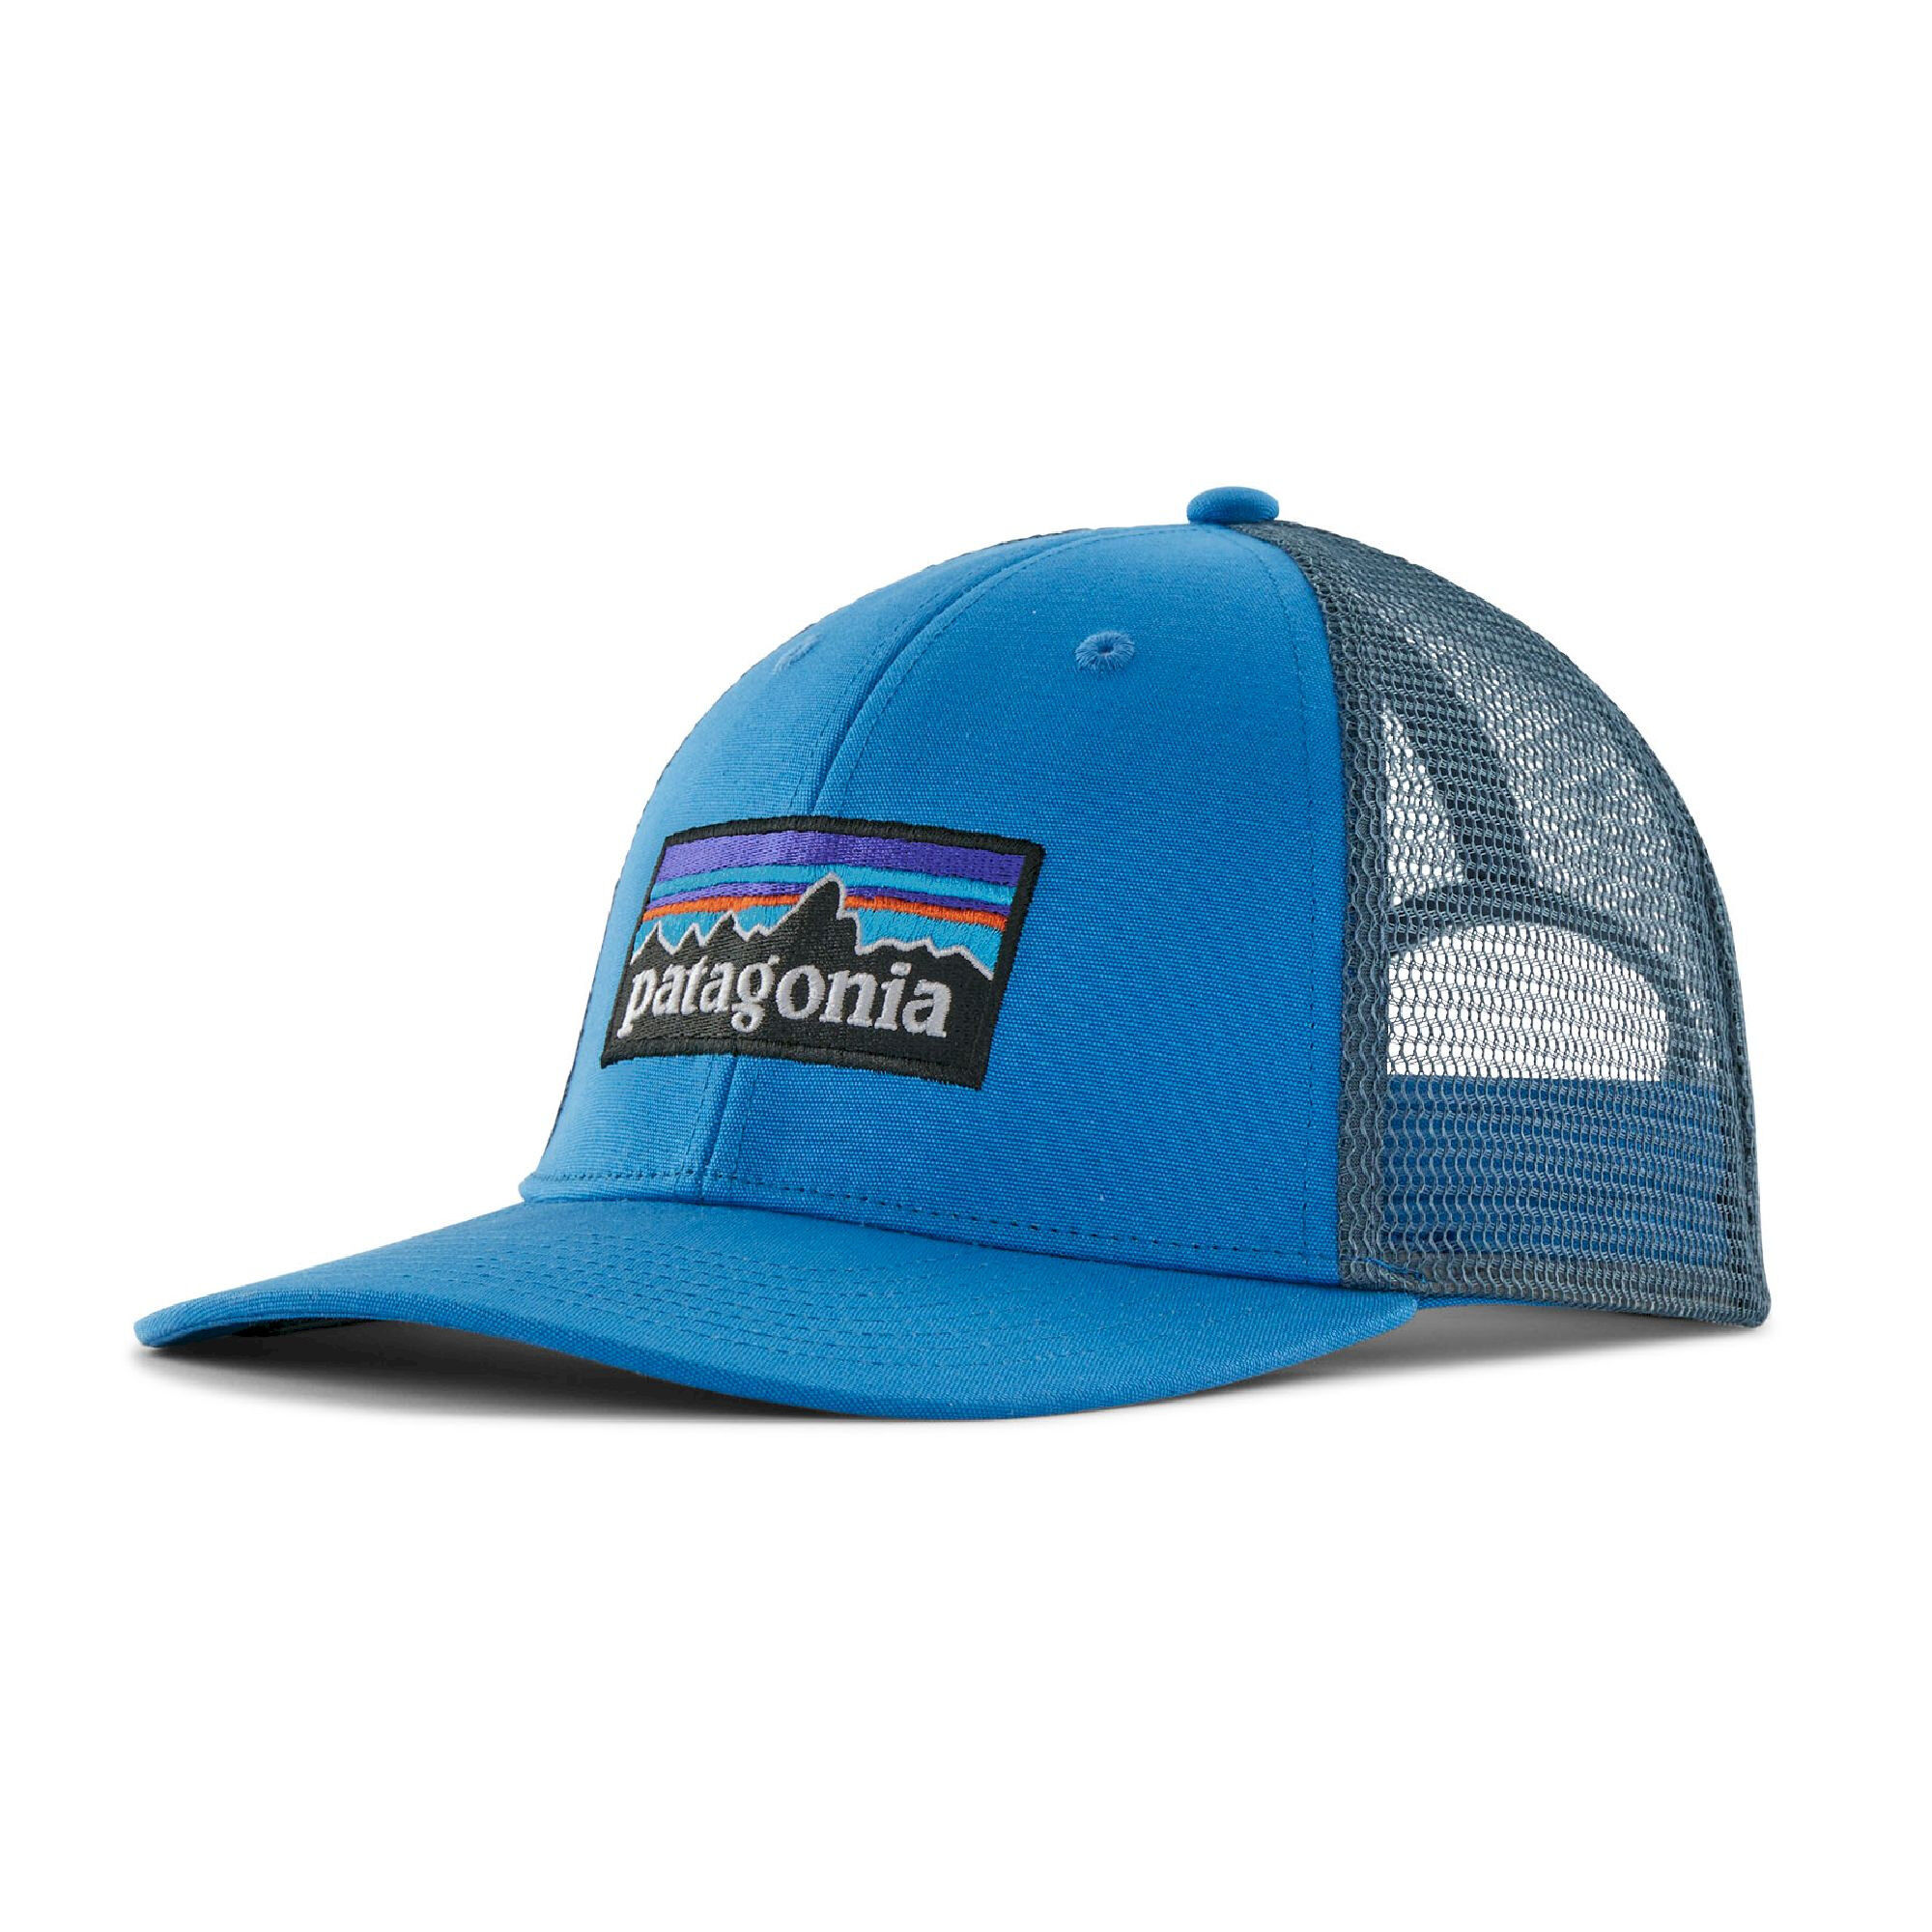 Patagonia Airshed Cap - Cap, Buy online